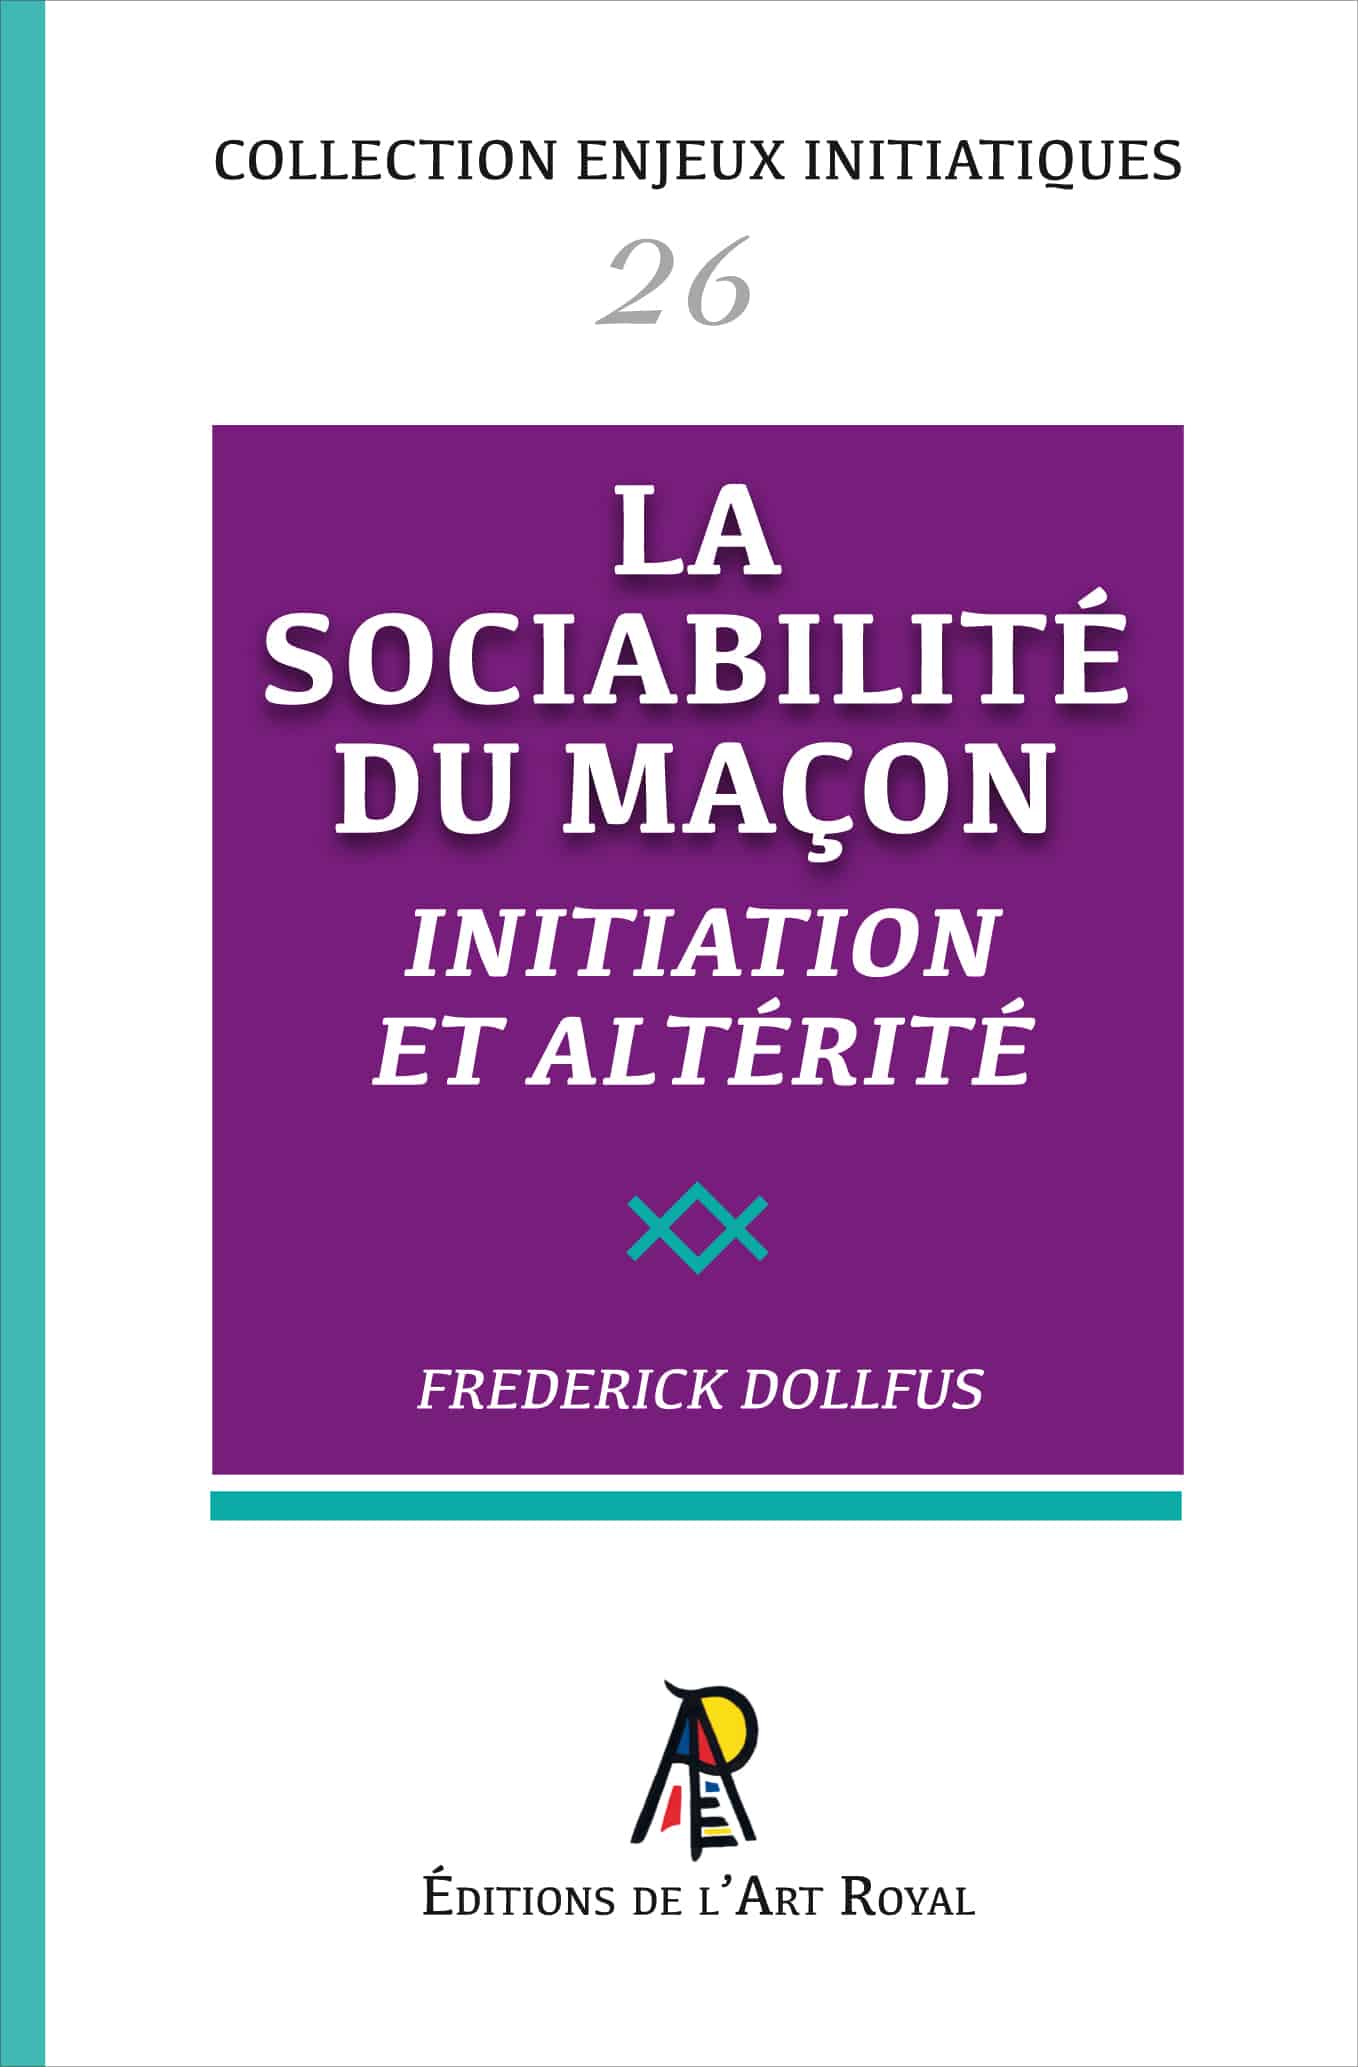 La sociabilité du Maçon - Initiation et altérité, Frederick Dollfus